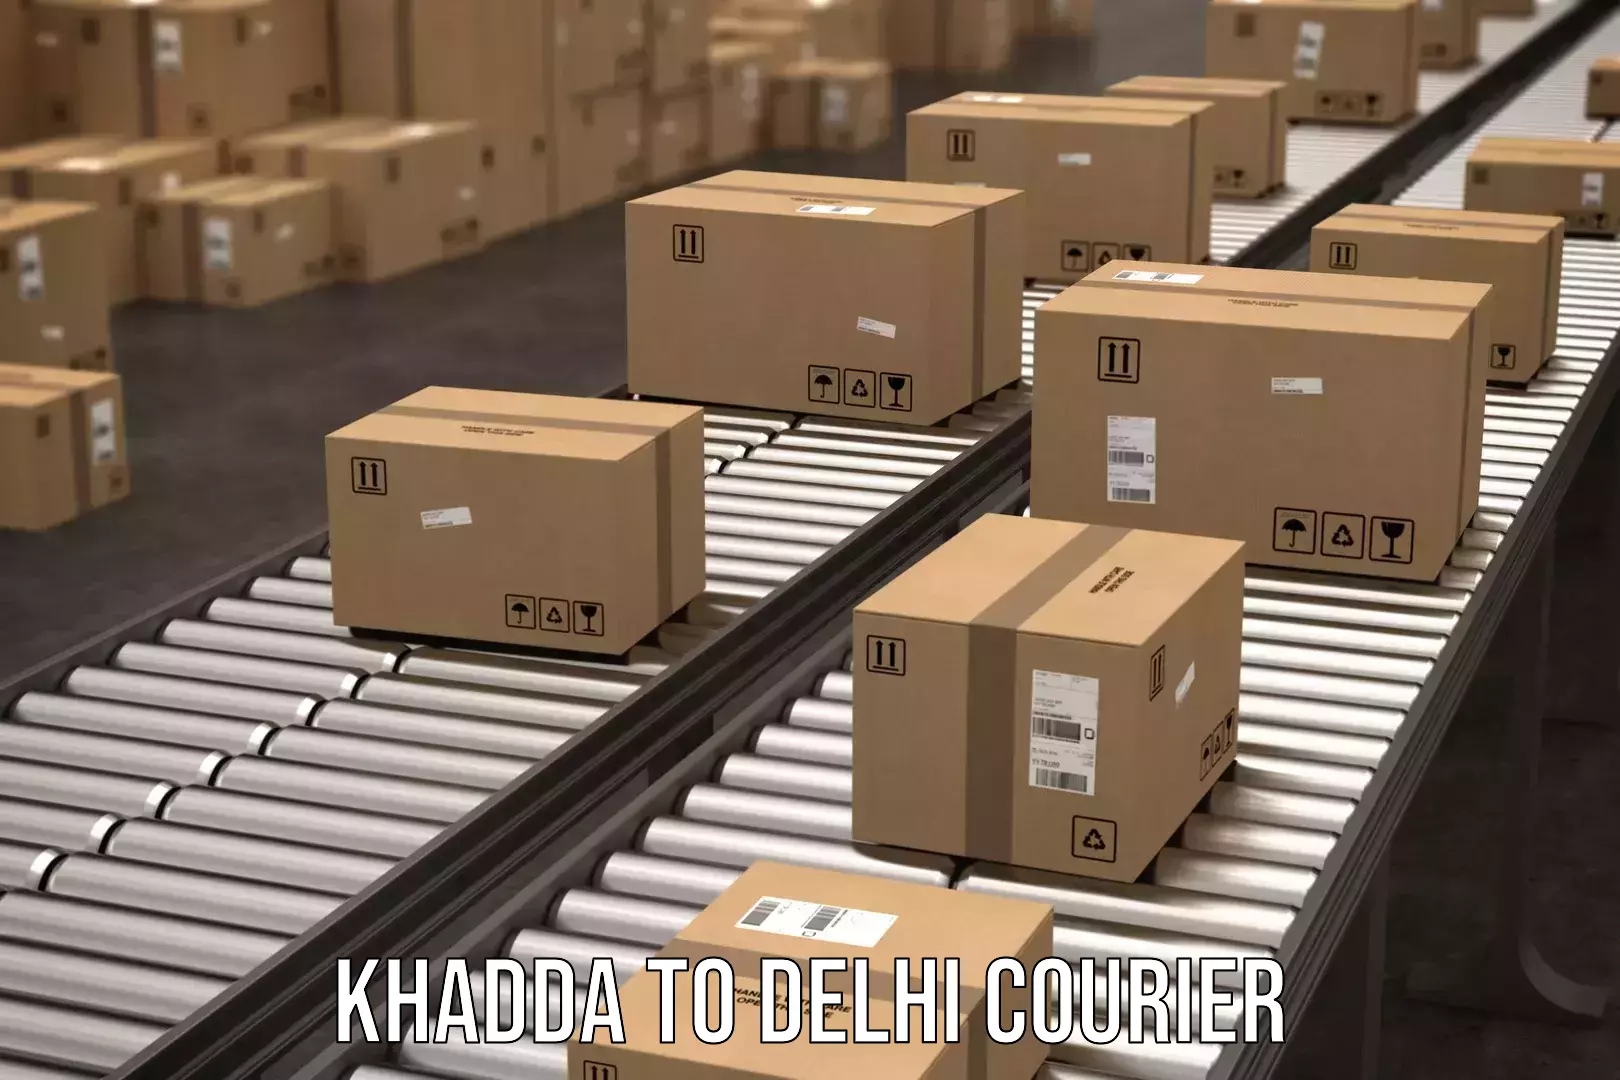 User-friendly delivery service Khadda to Subhash Nagar